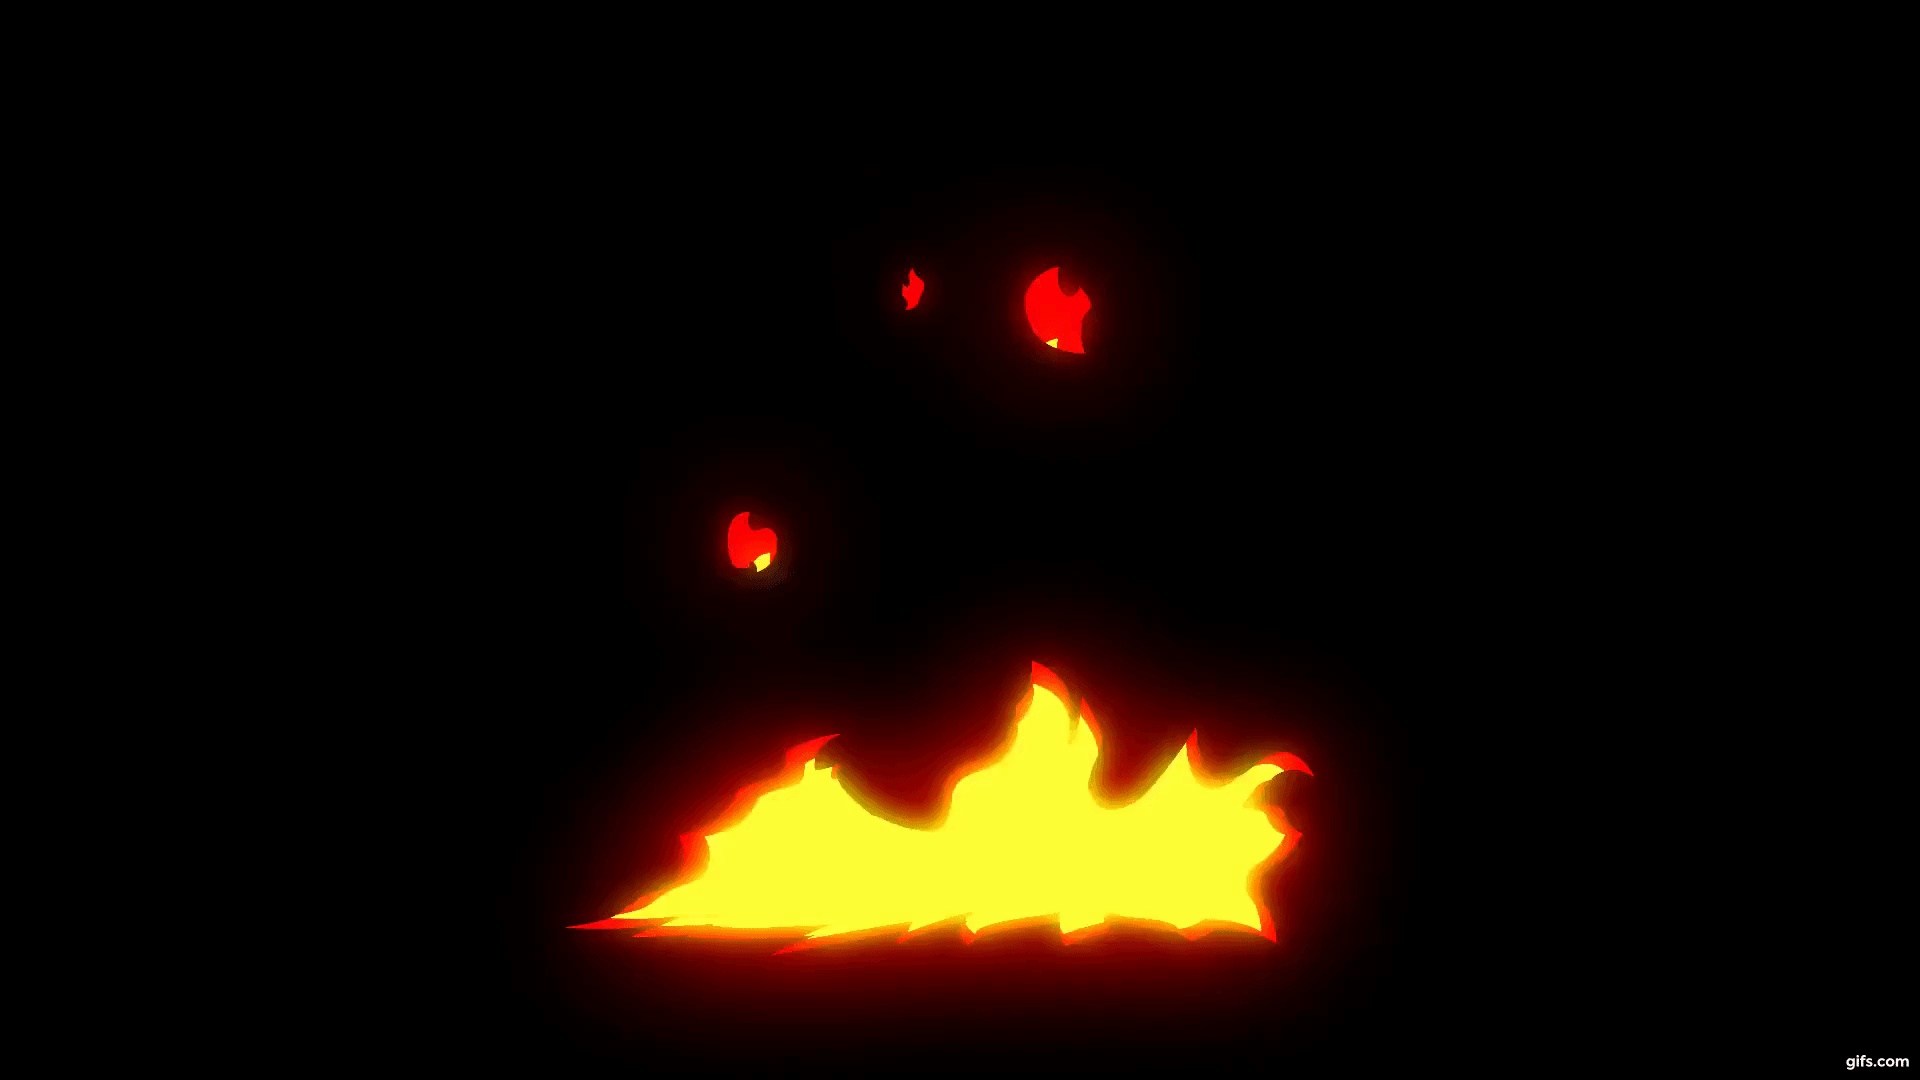 Feuer auf GIFs - 120 animierte Flammenbilder kostenlos